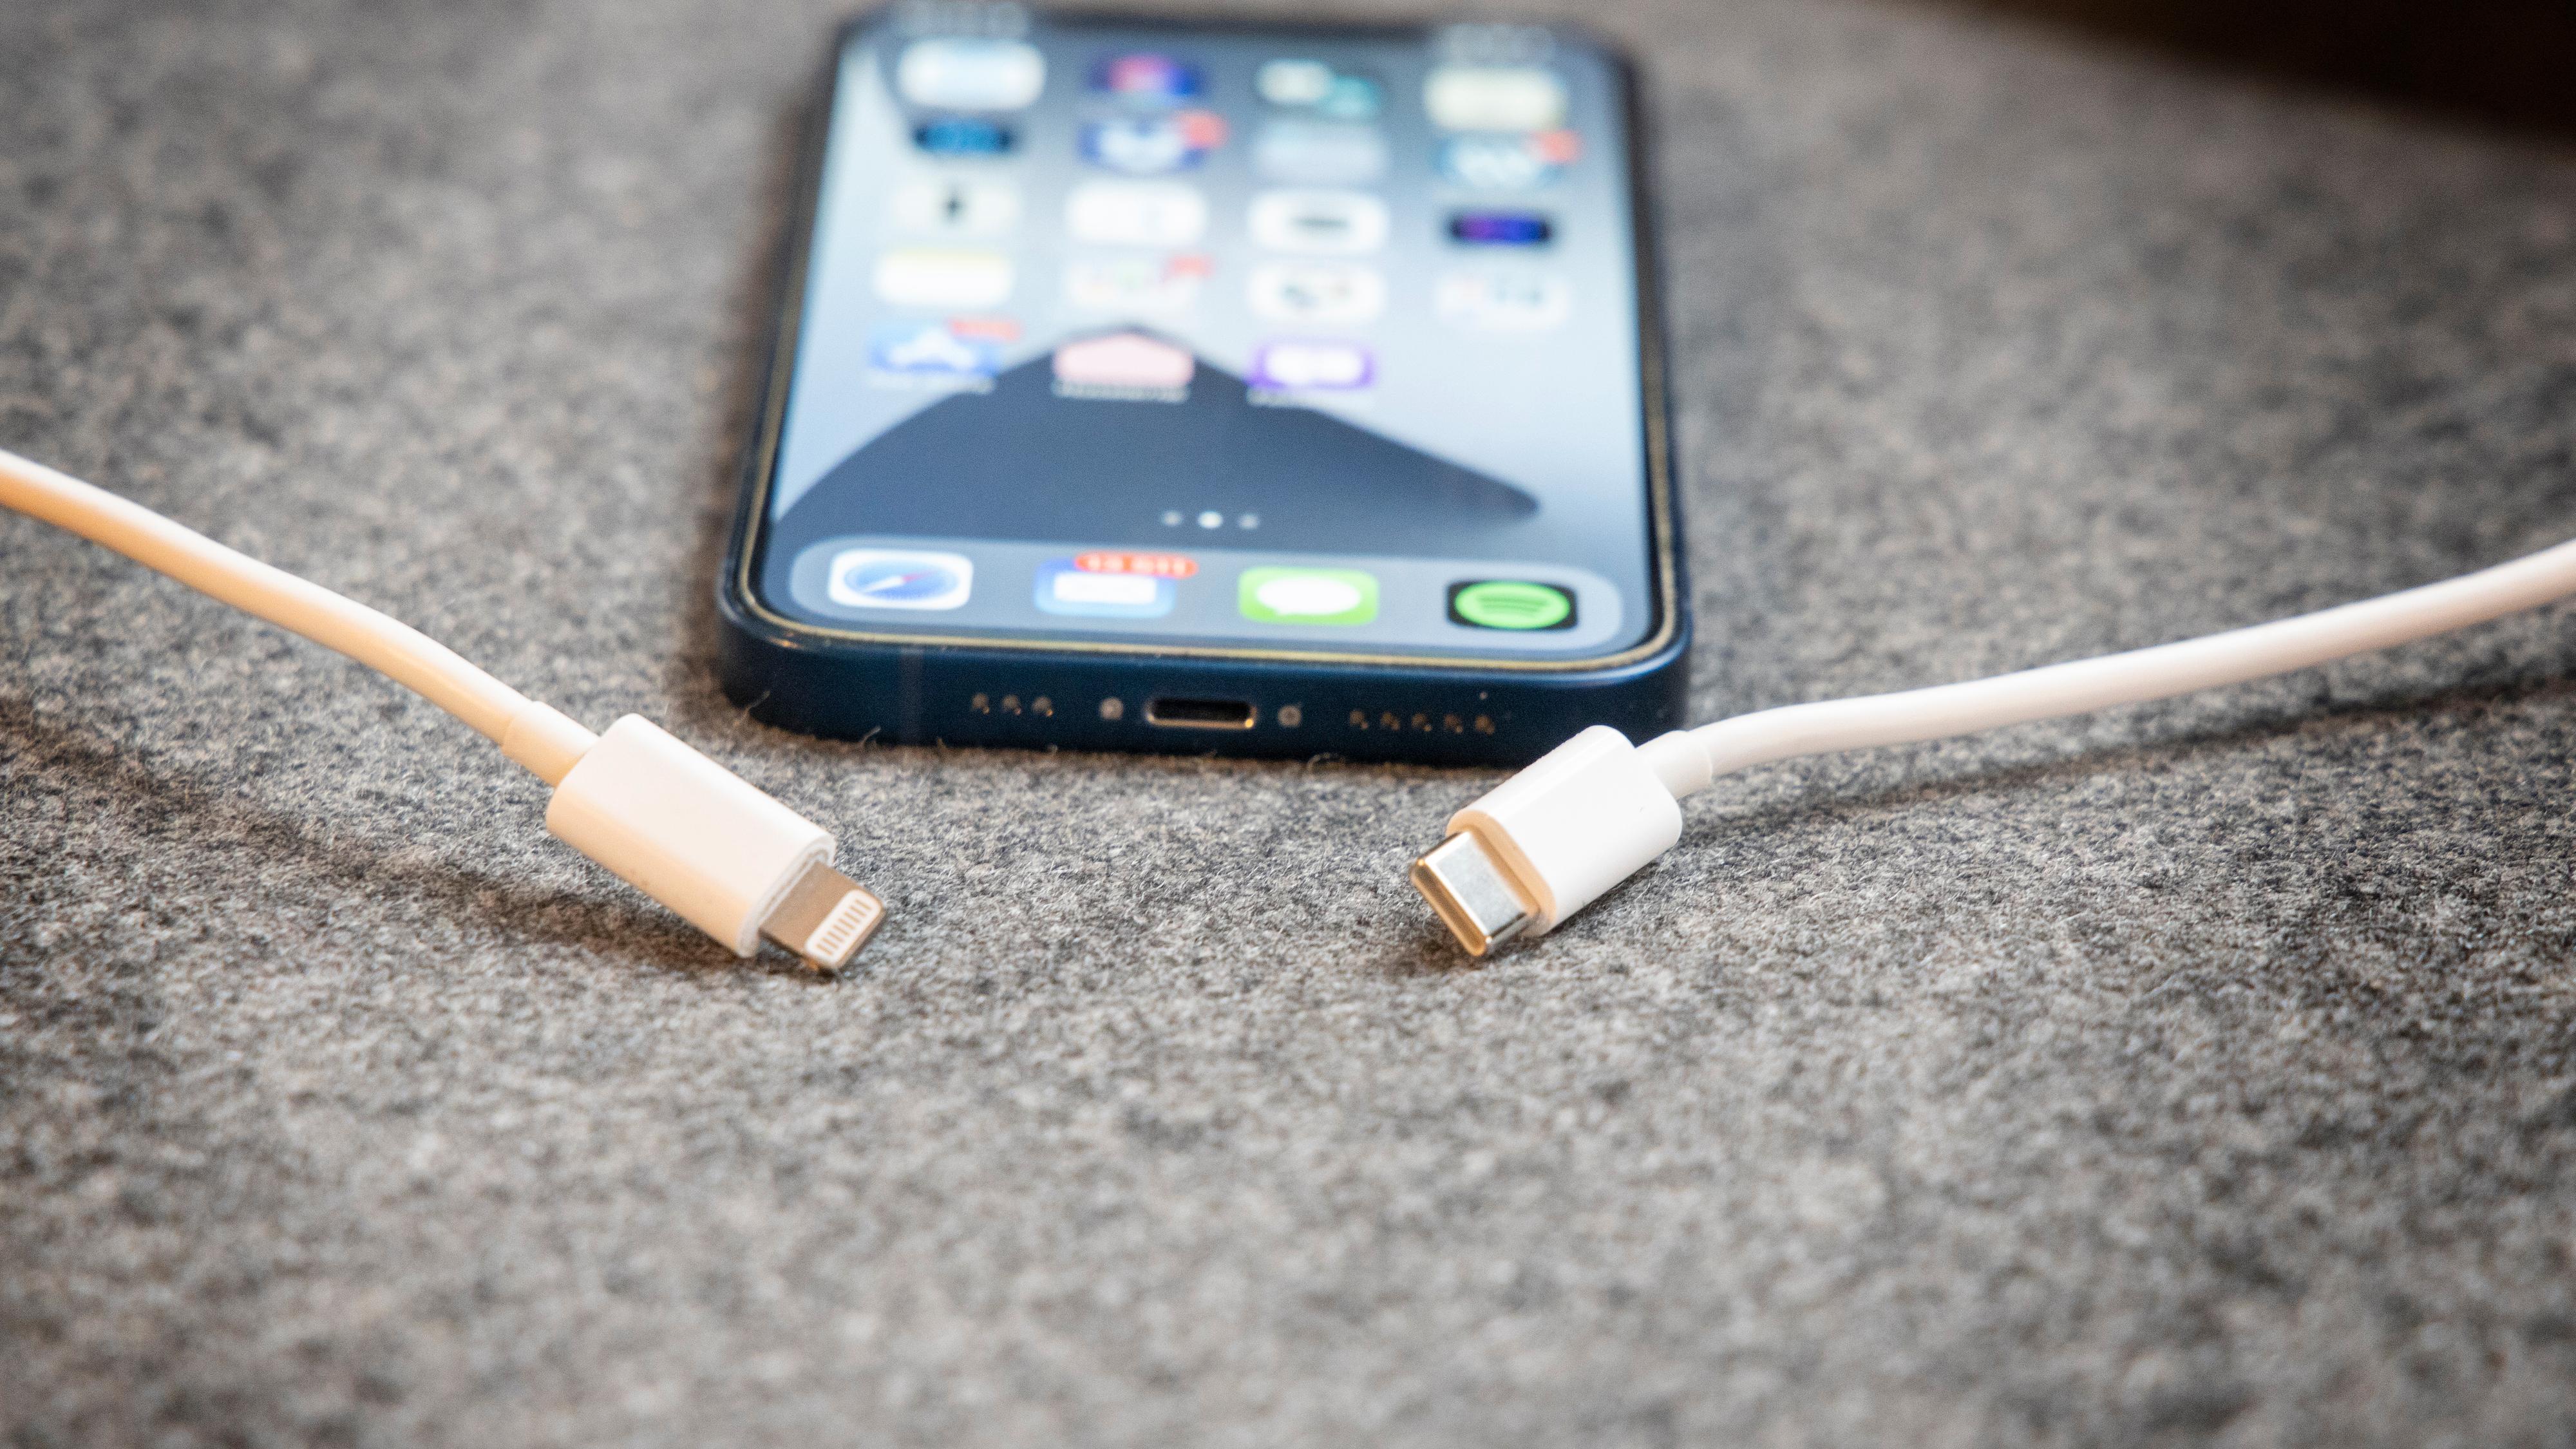 Skal Apple få fortsette med Lightning-tilkoblingen på iPhone? Nei, mener EU-kommisjonen. 